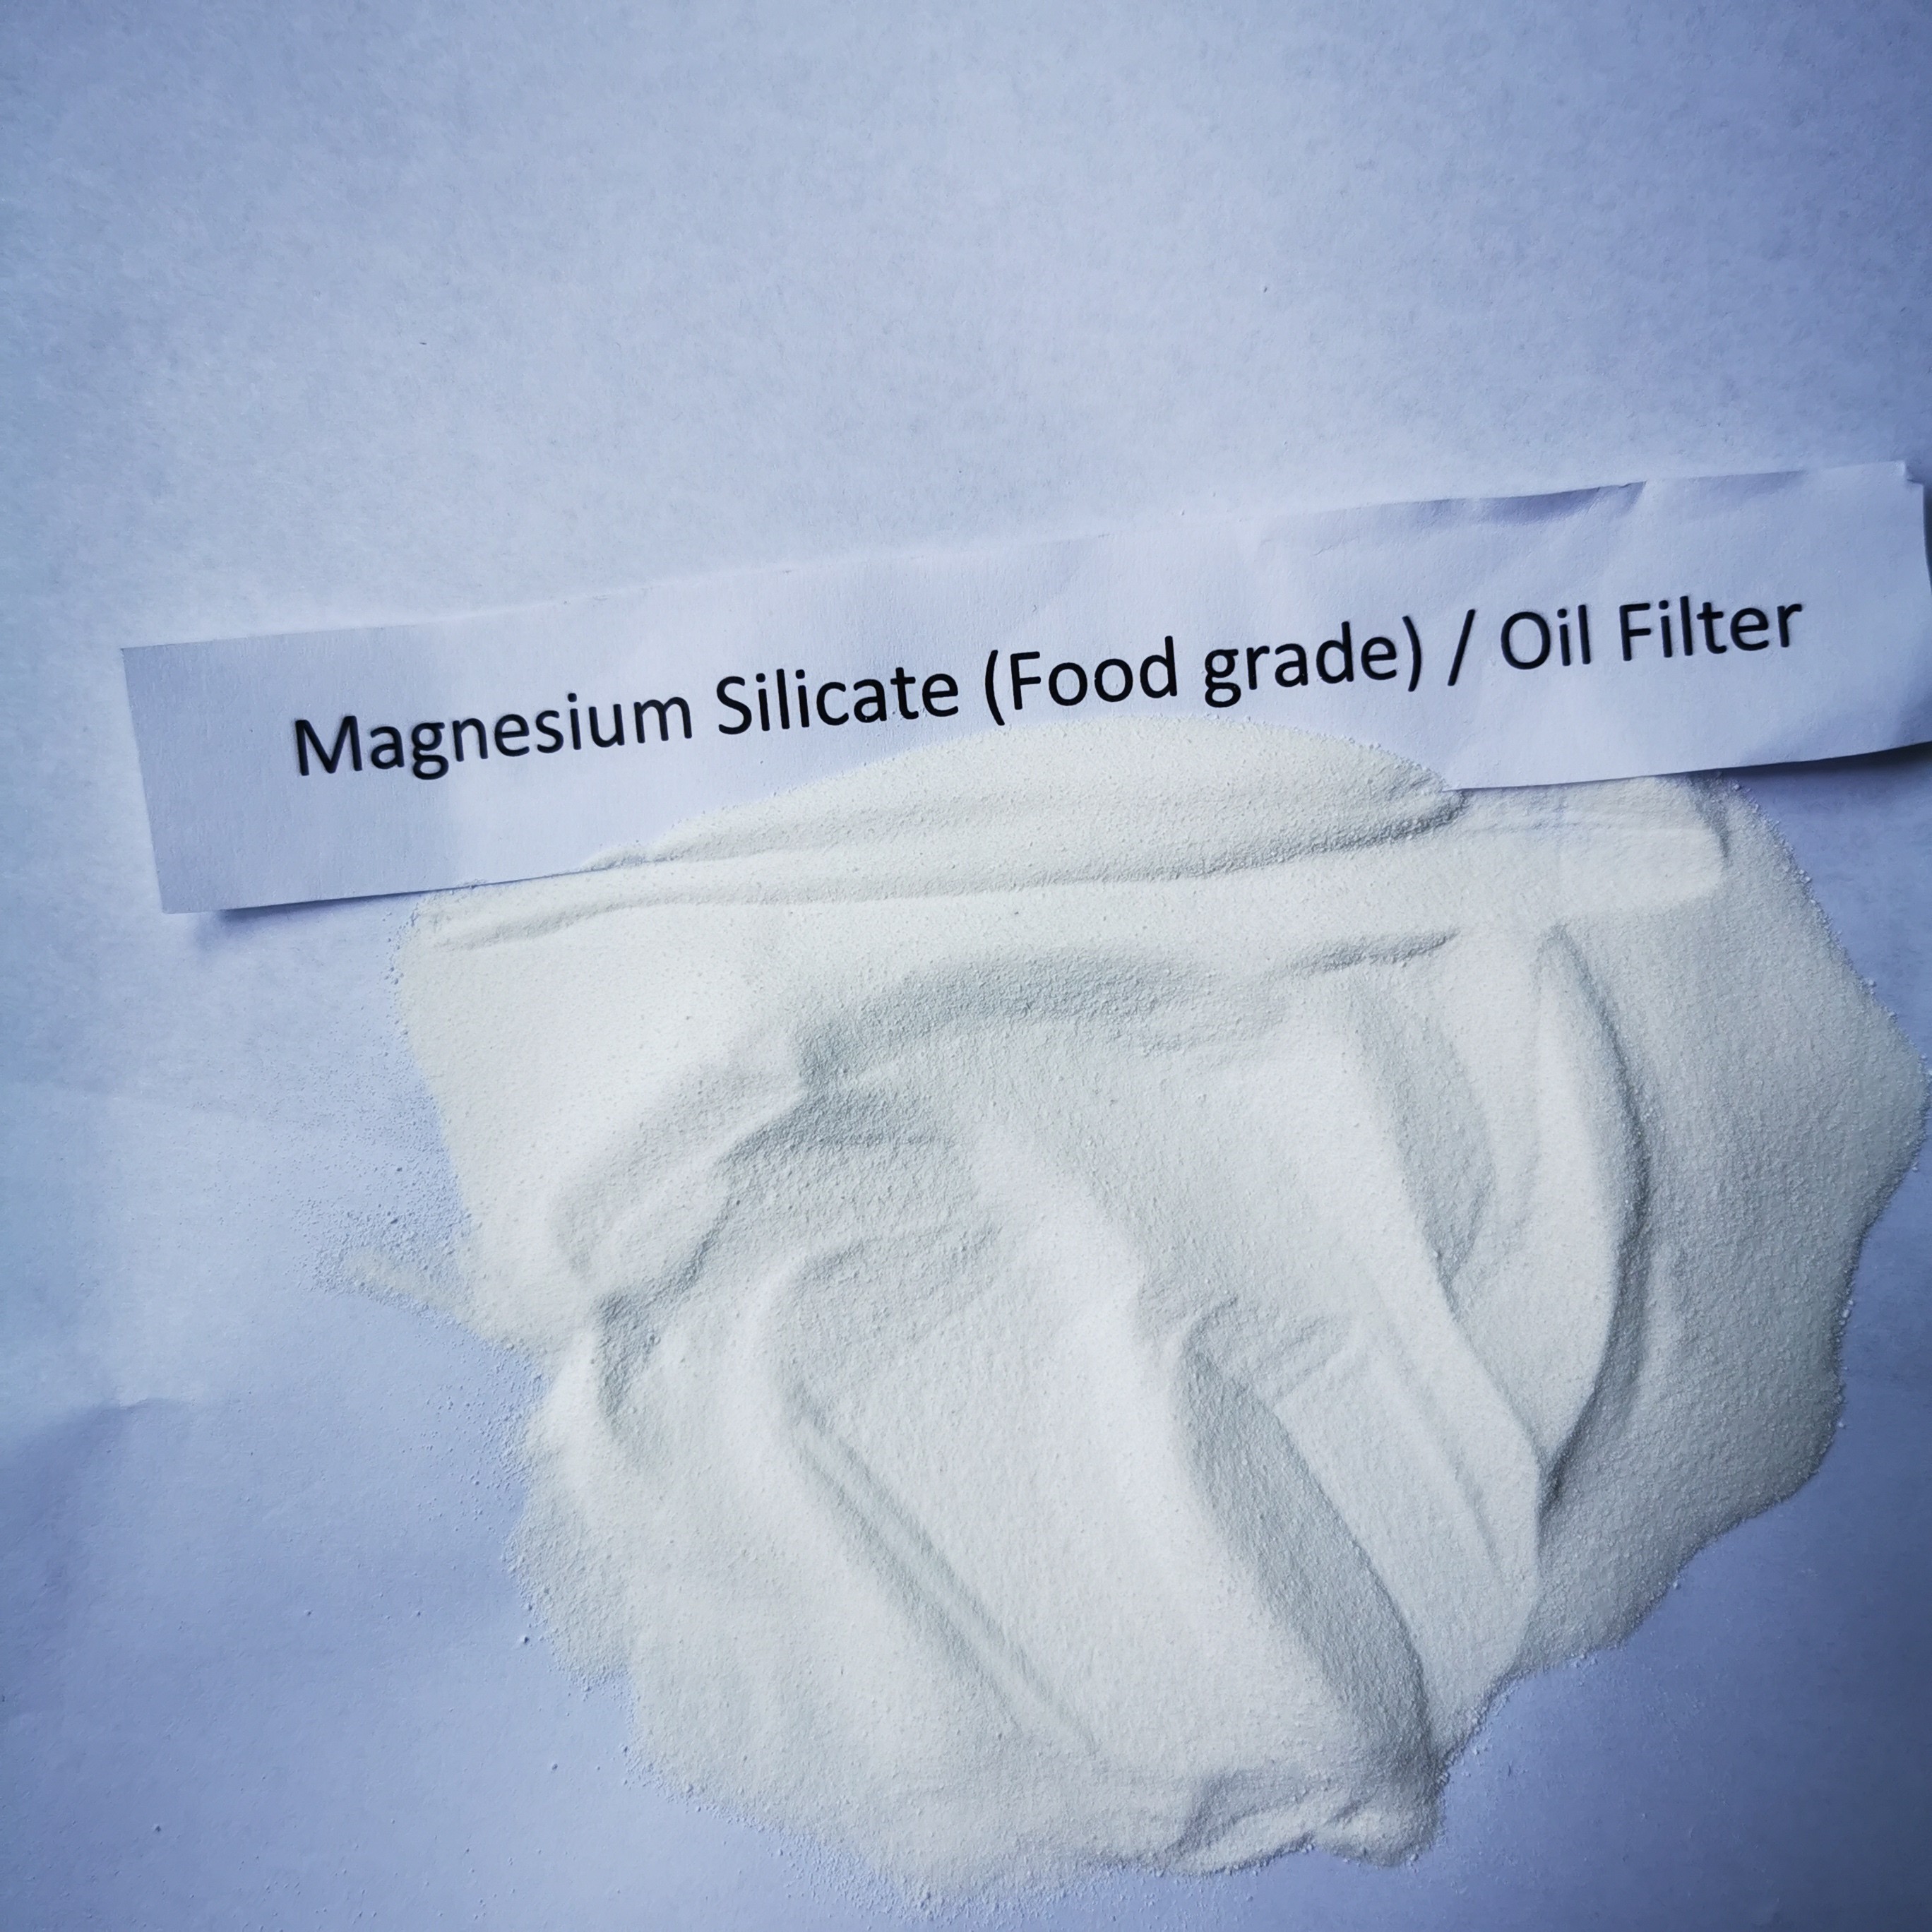 Filtreur d'huile poudre de silicate de magnésium économisez de l'huile